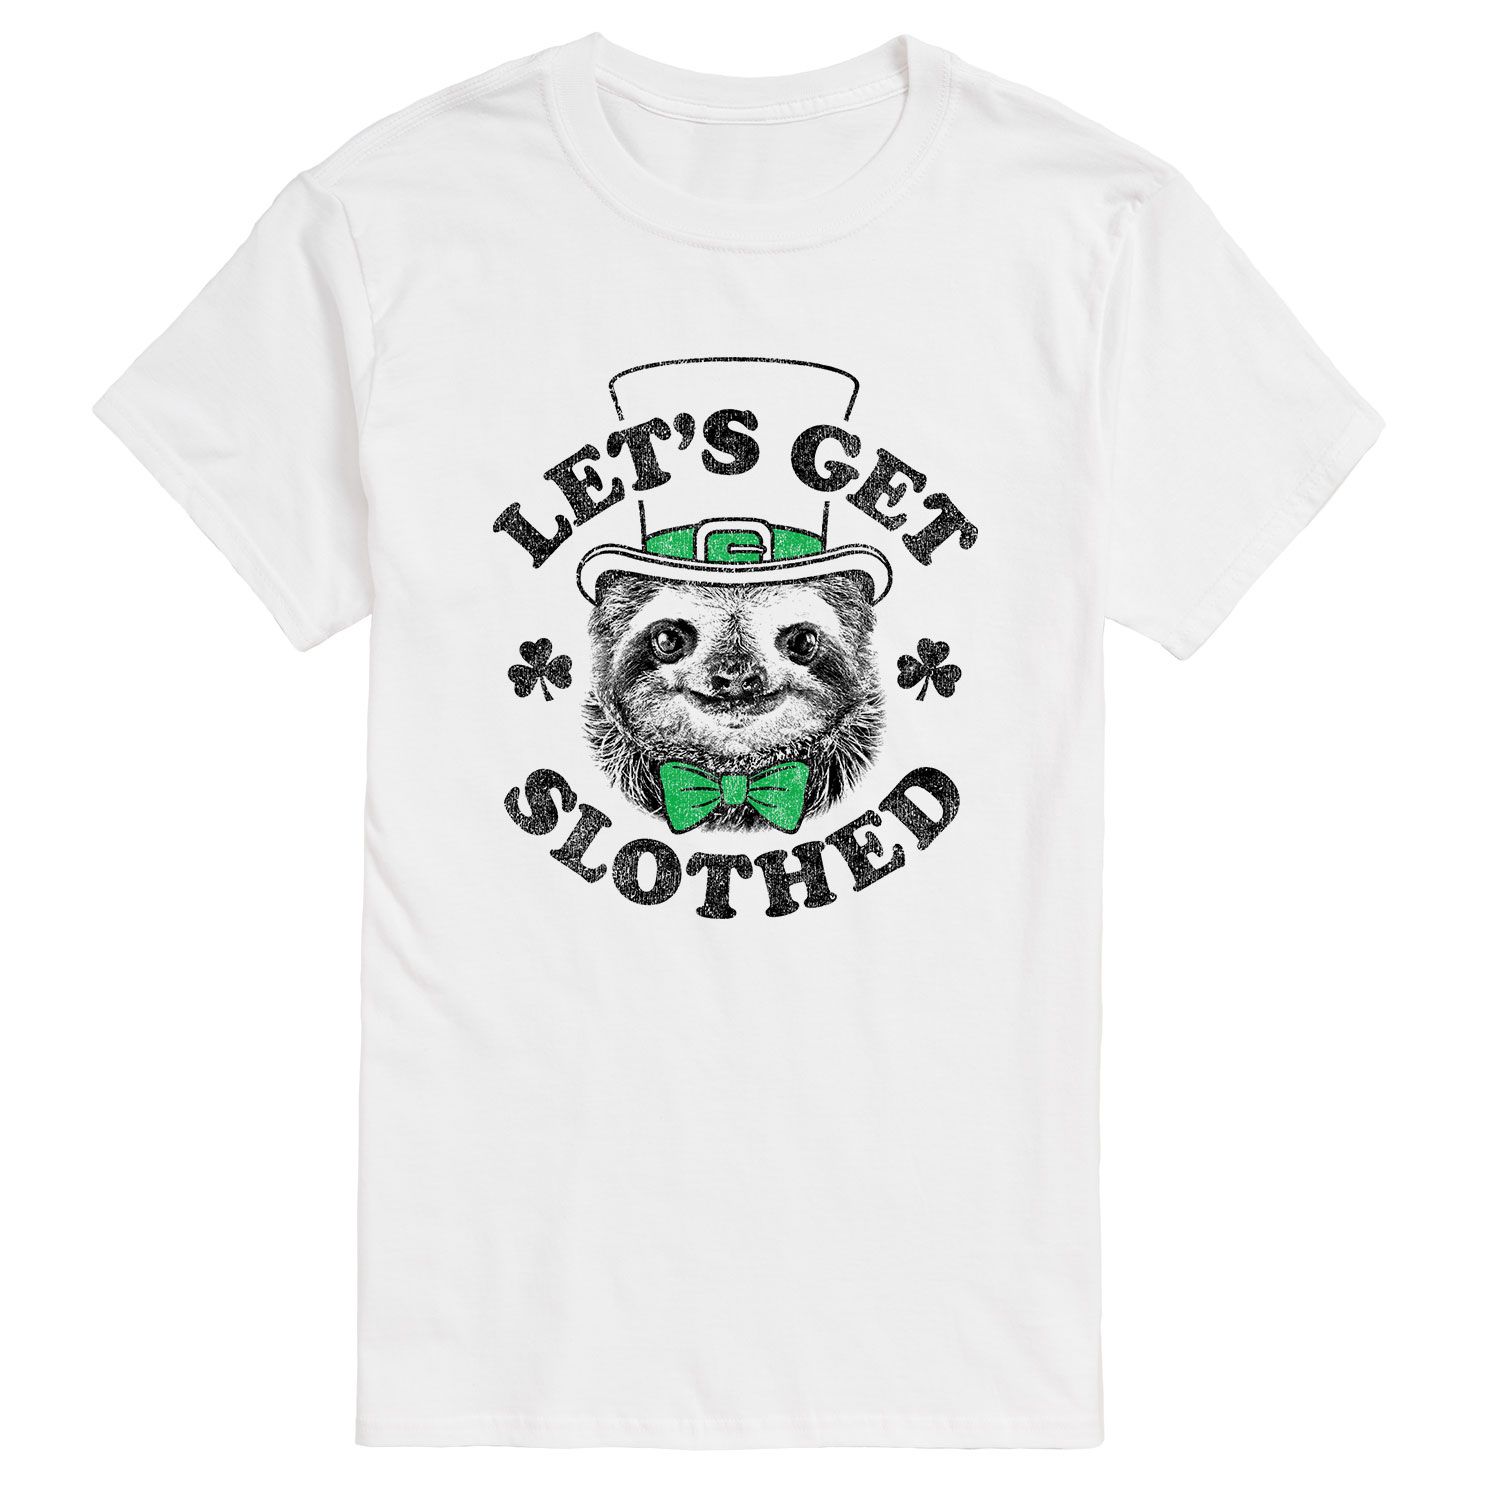 Мужская футболка Lets Get Slothed Licensed Character мужская футболка ripndip lets get this bread pocket чёрный размер m